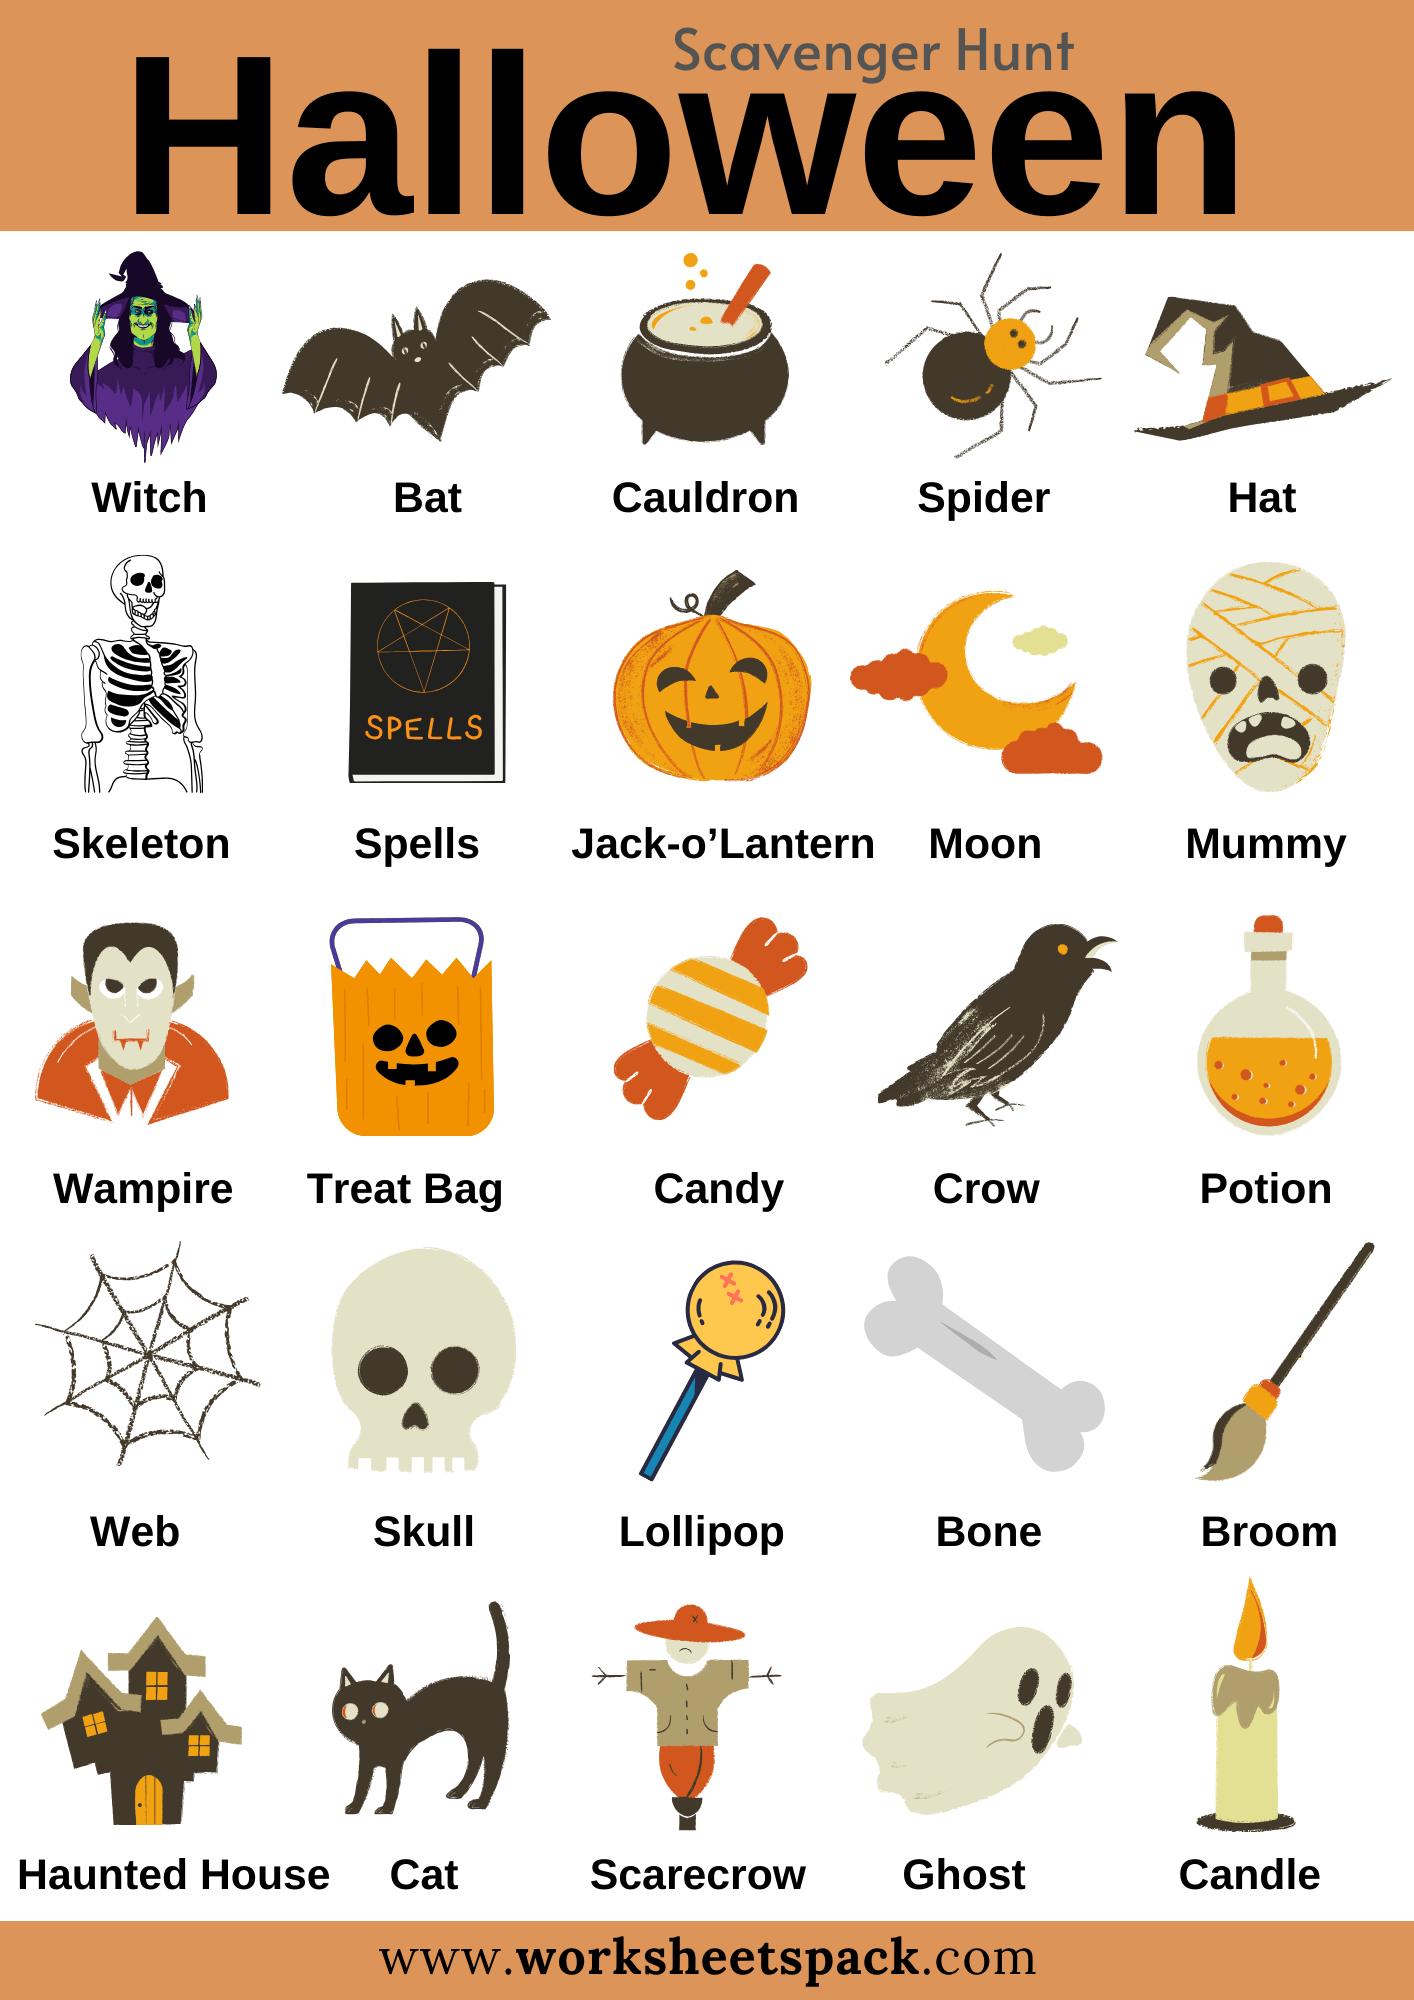 Creating Spooky Memories: 12 Best Halloween Scavenger Hunt Ideas ...